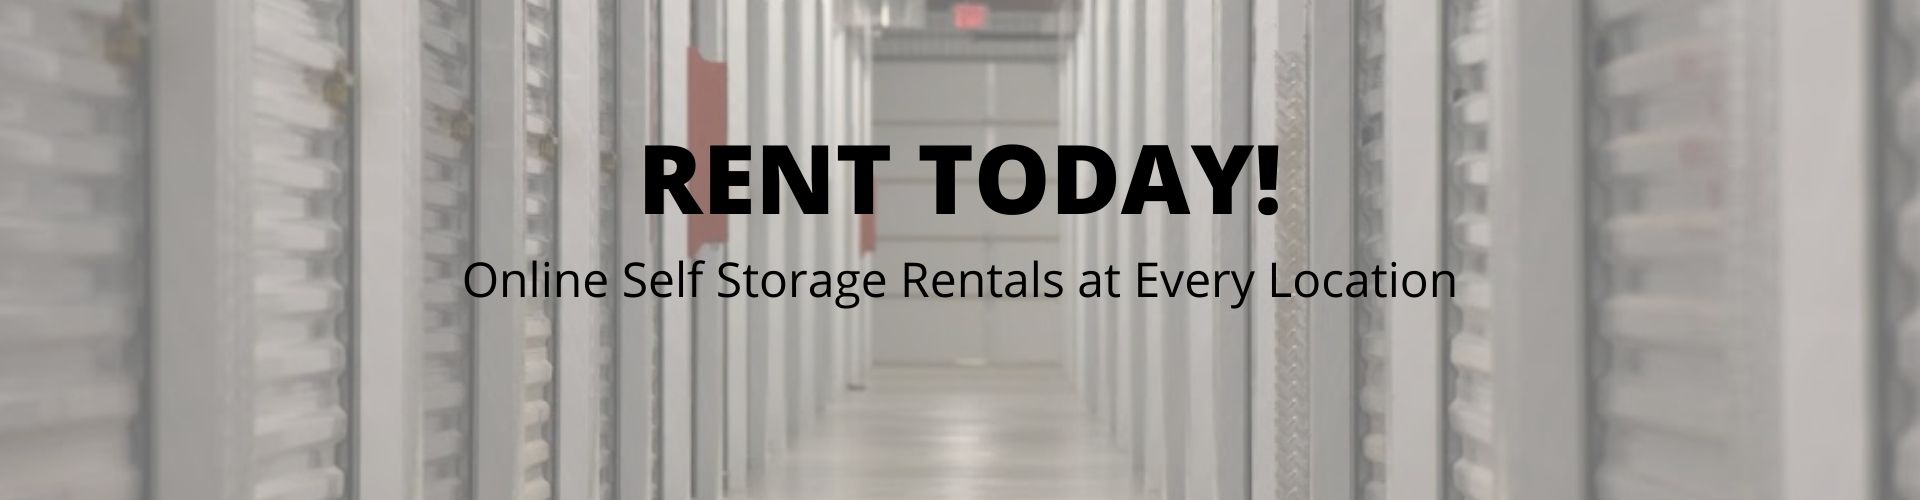 online storage rentals at Scot Stor Mini Storage